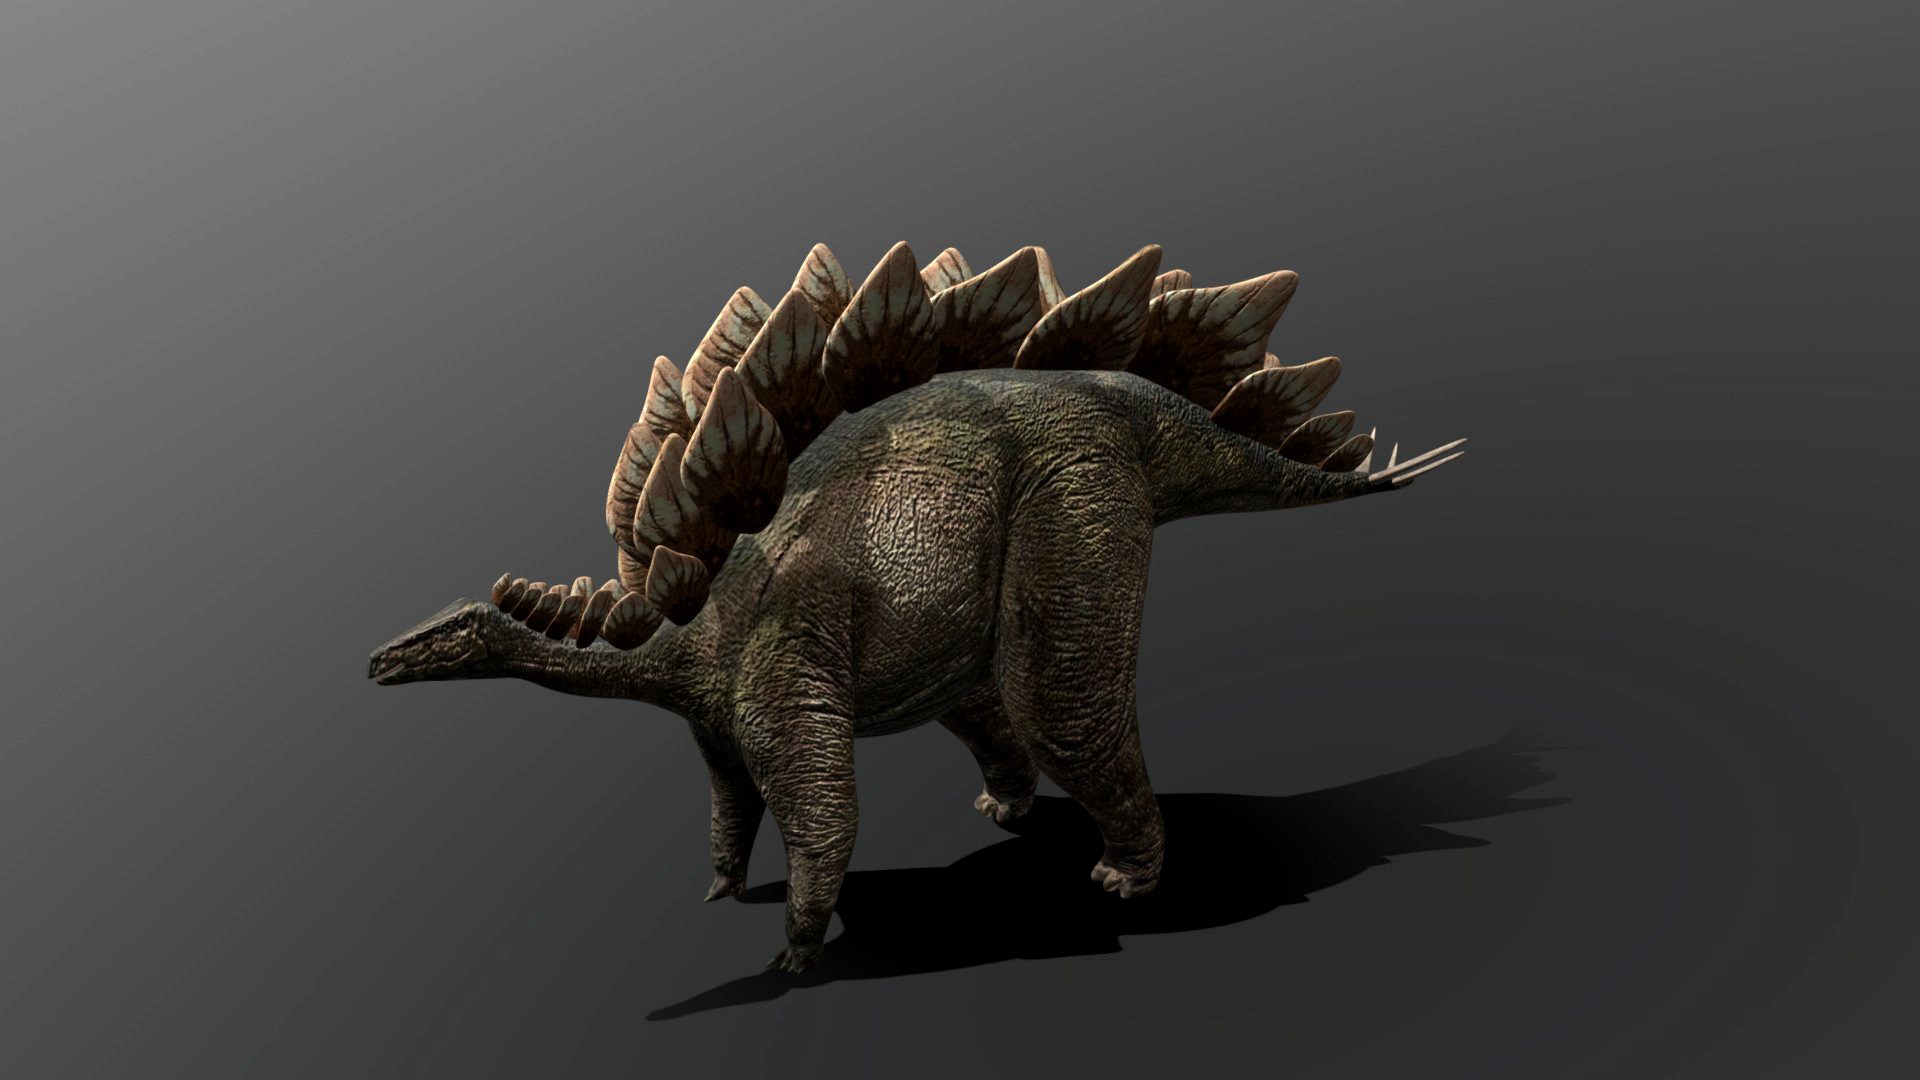 Stegosaur